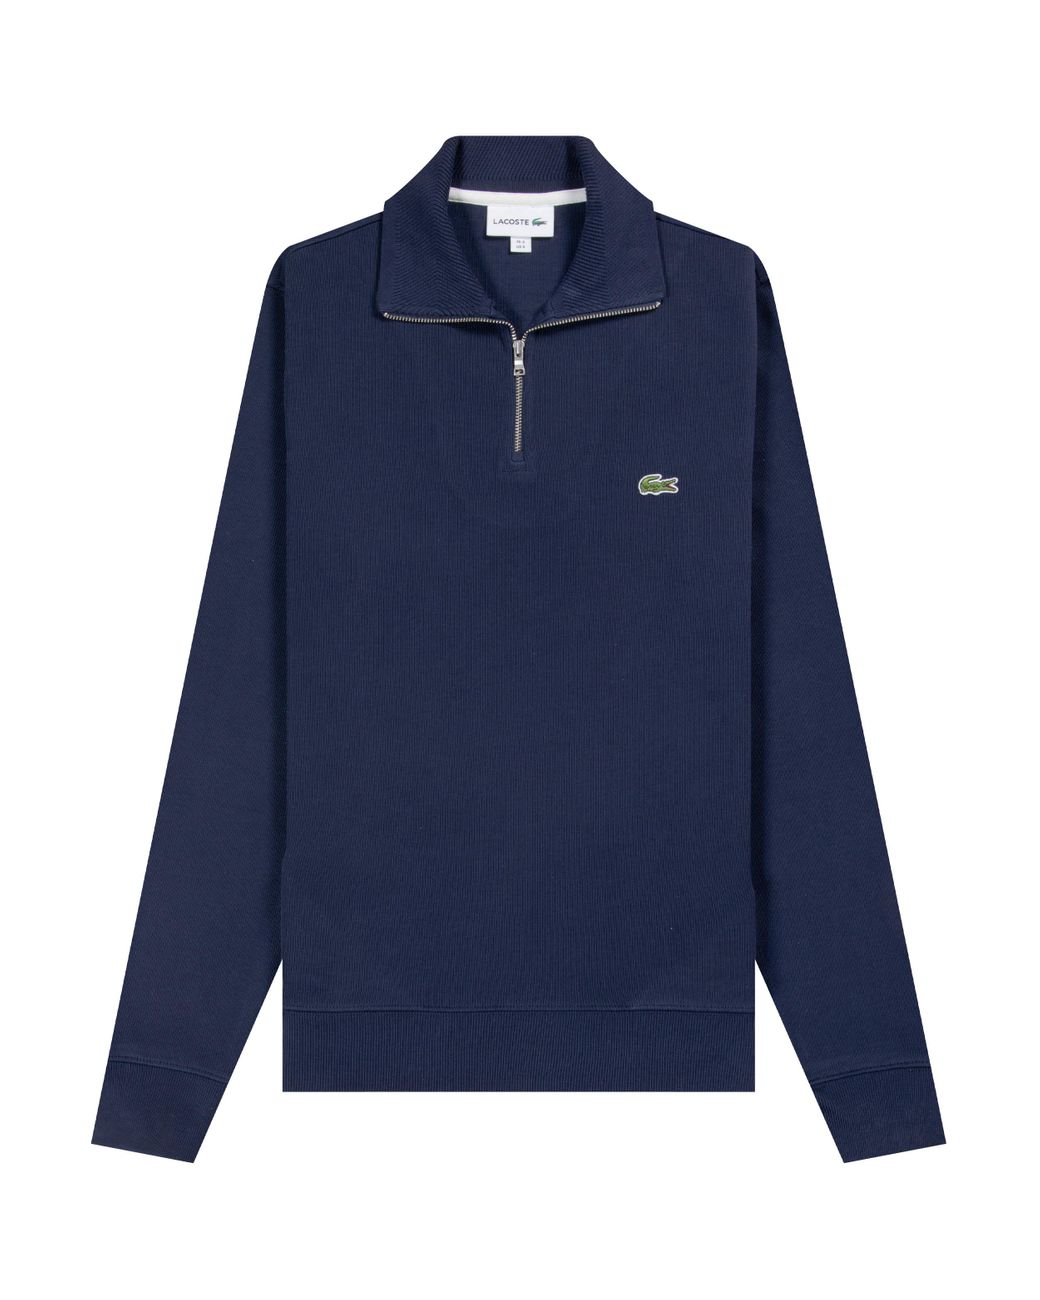 Lacoste Cotton 'classic 1/4 Zip' Logo Sweatshirt Navy in Blue for Men ...